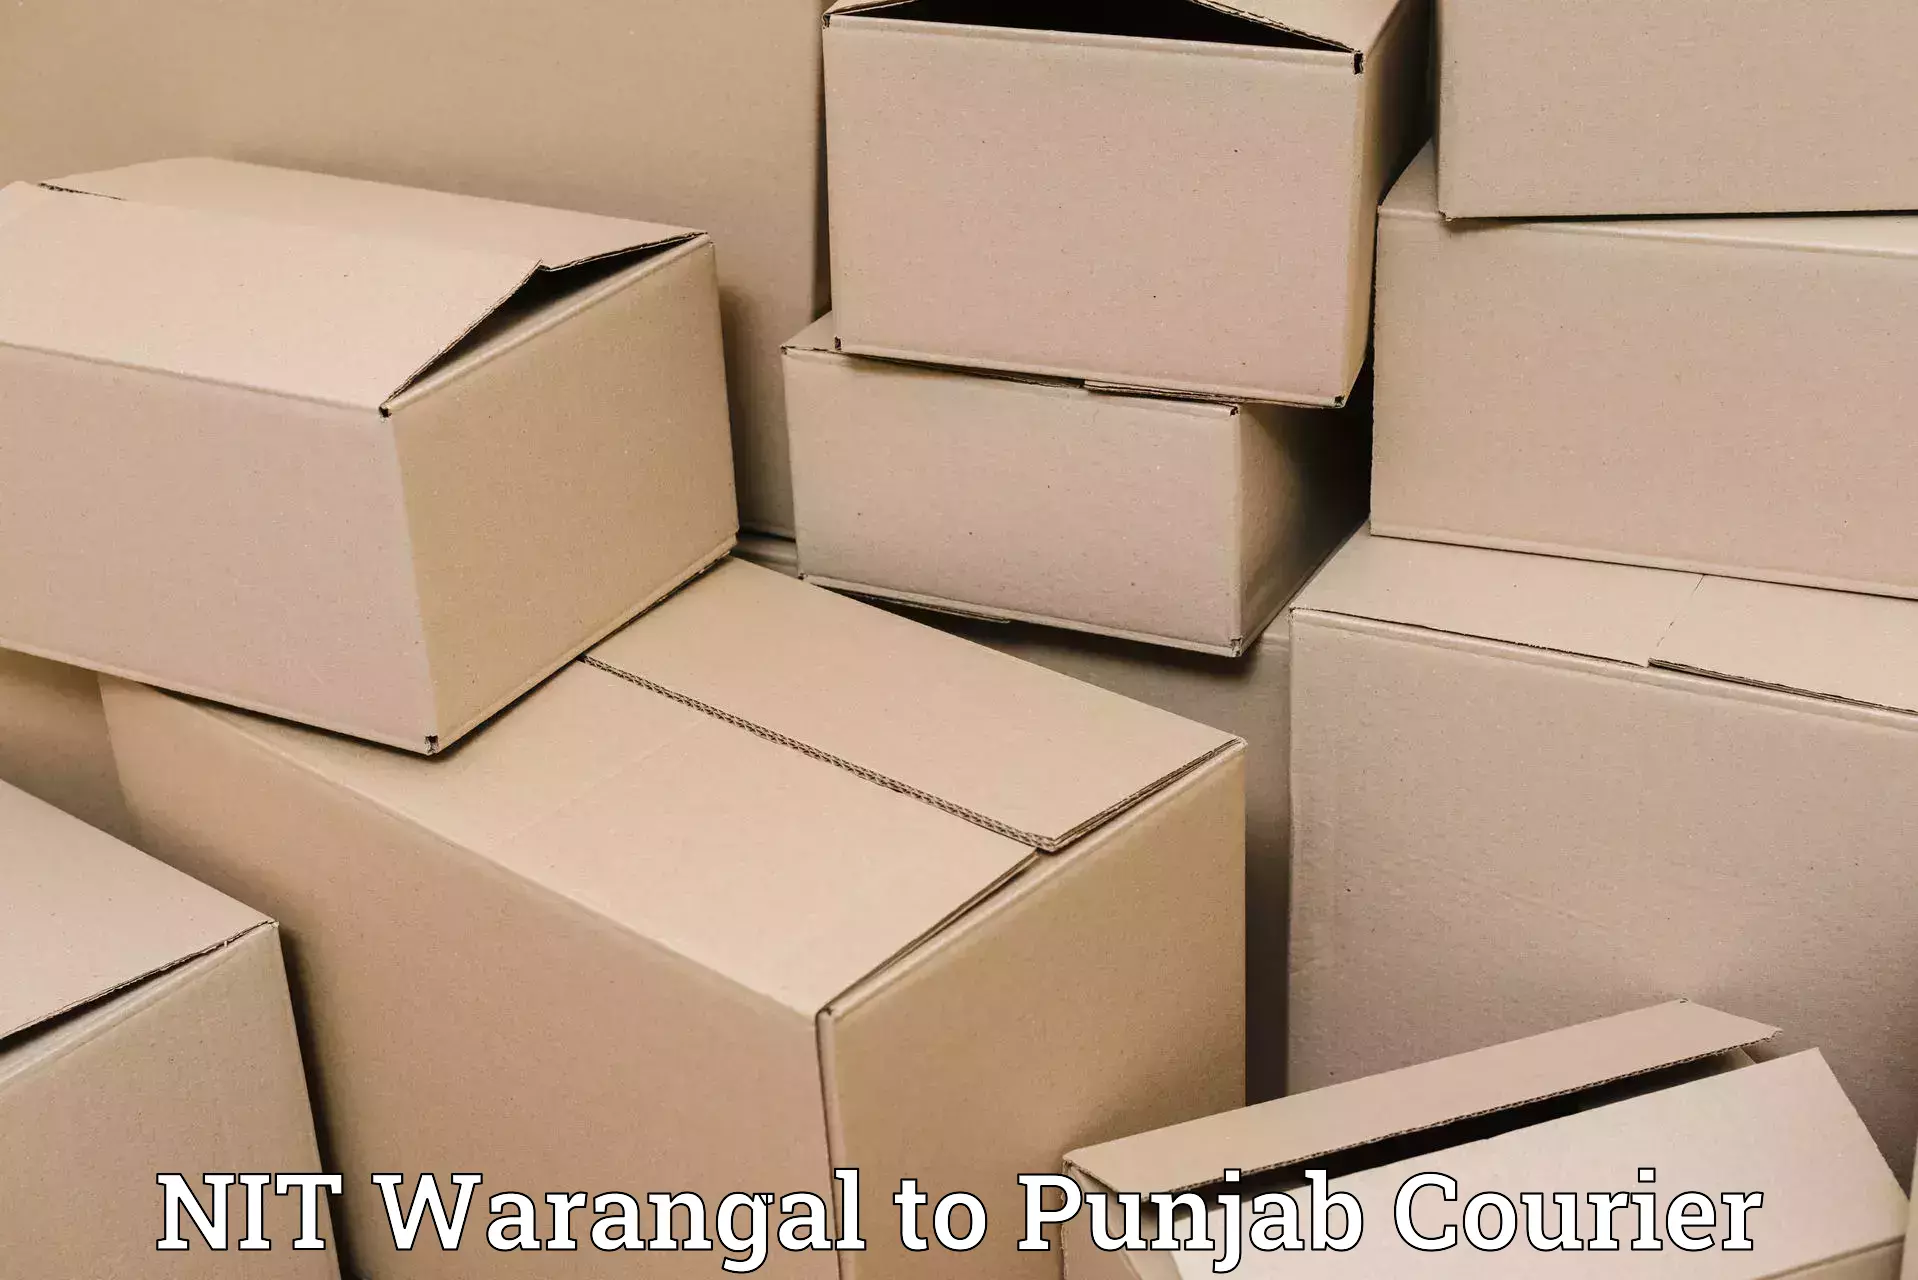 Ocean freight courier NIT Warangal to Punjab